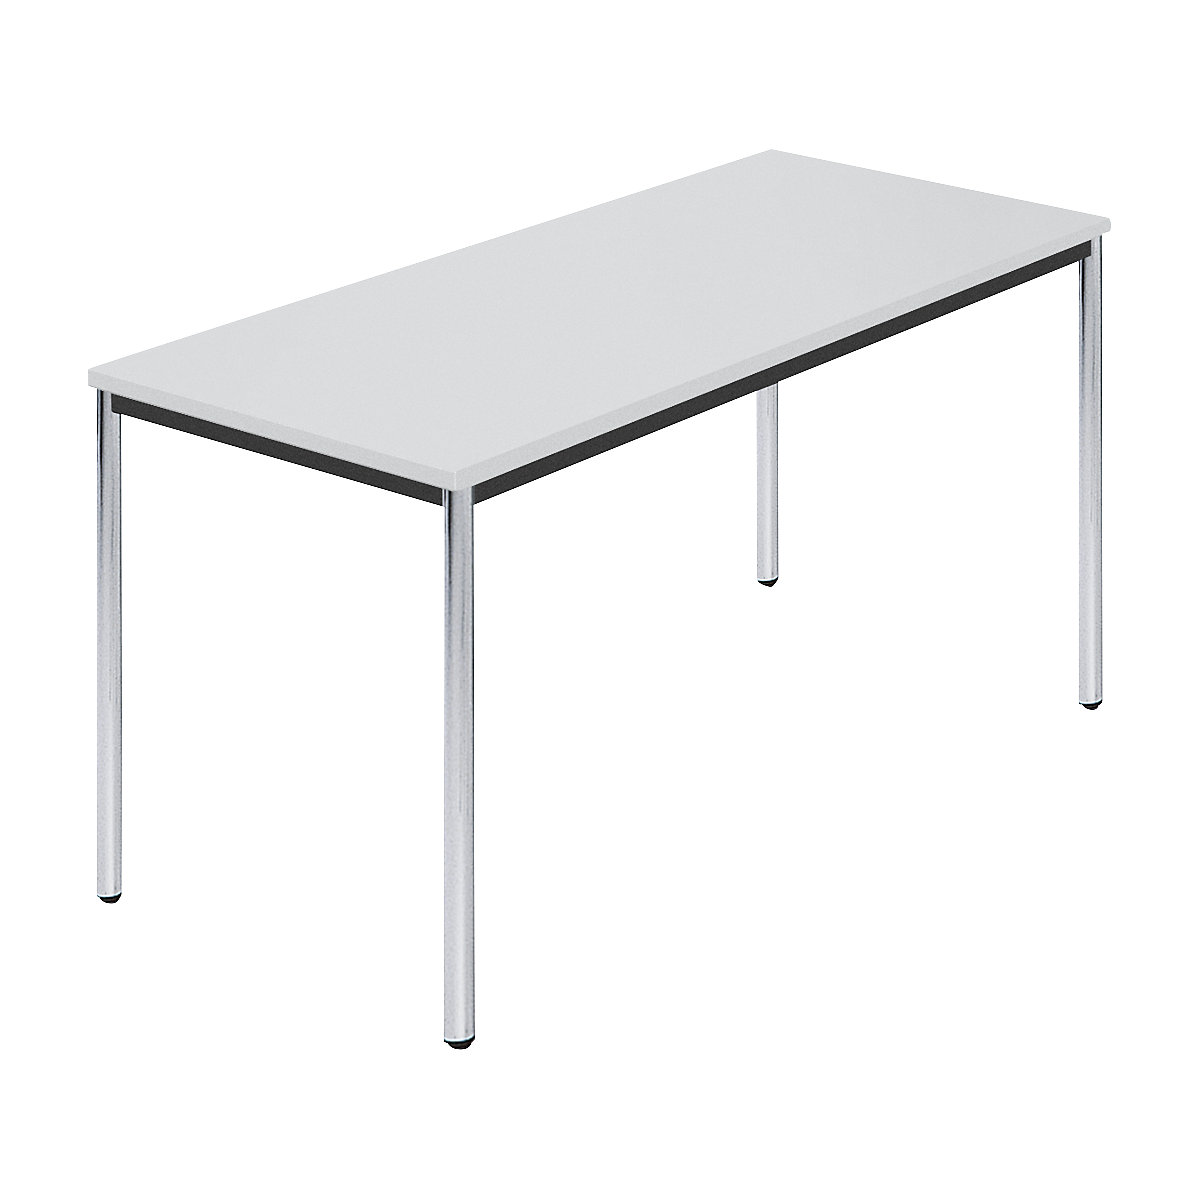 Rechthoekige tafel, met ronde, verchroomde tafelpoten, b x d = 1400 x 700 mm, grijs-5